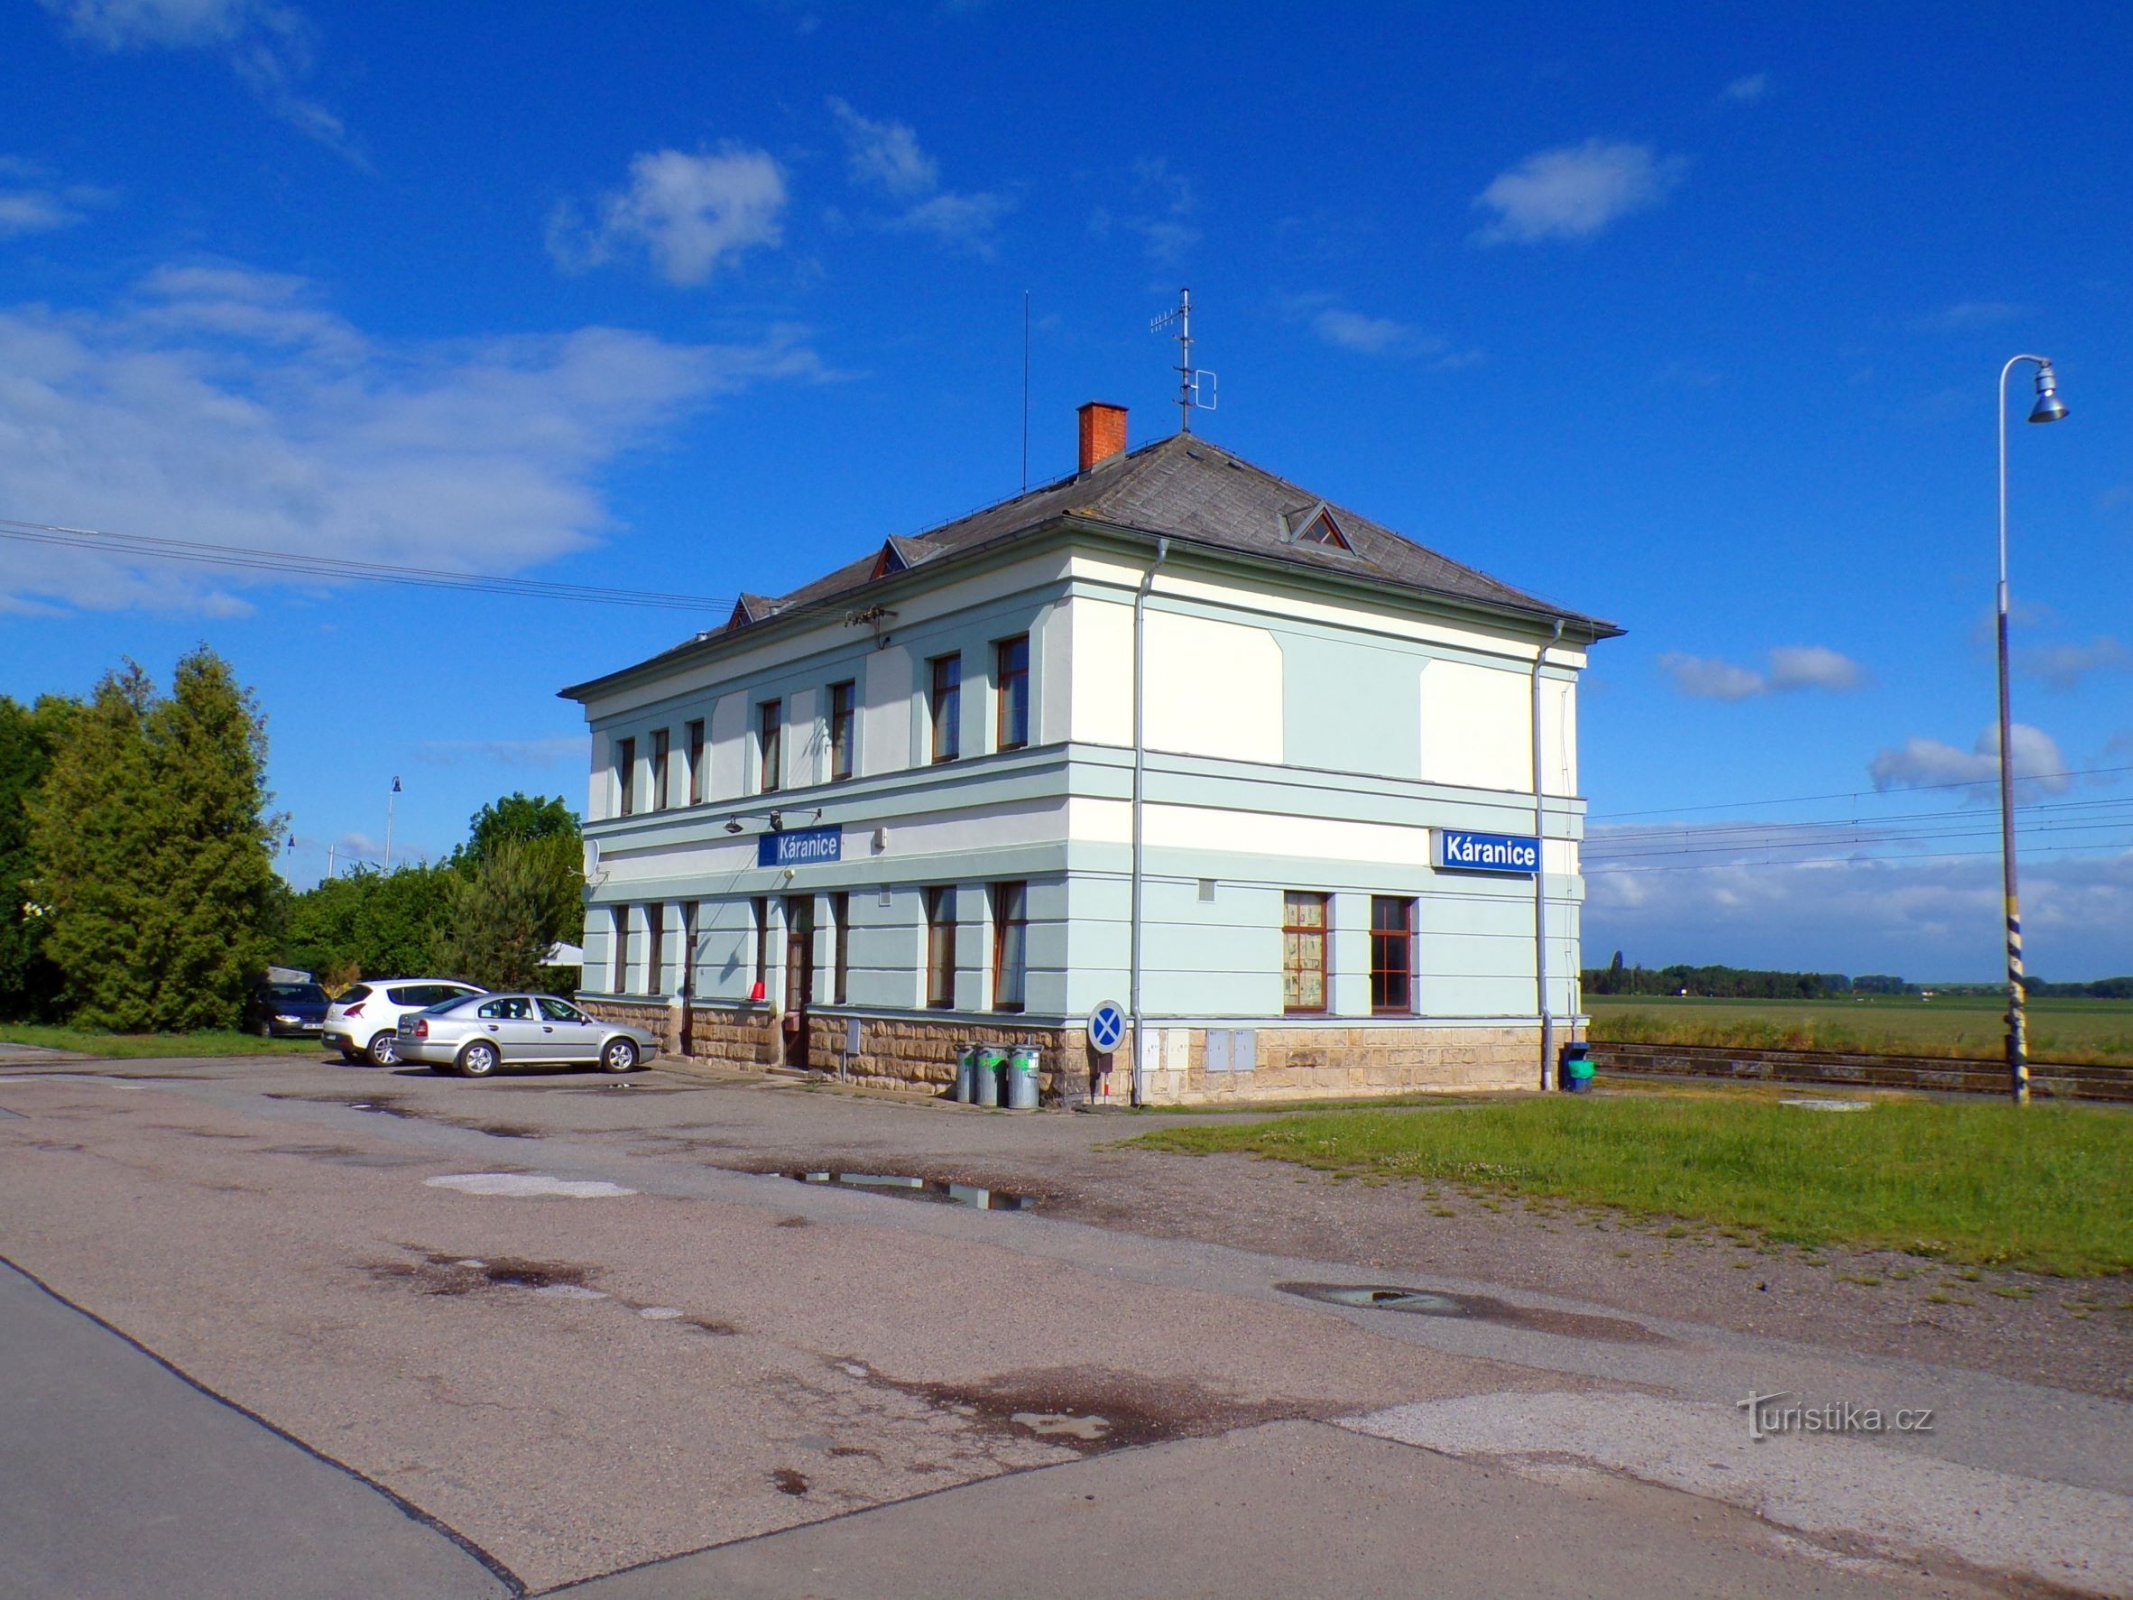 Будівля вокзалу (Káranice, 29.5.2022)